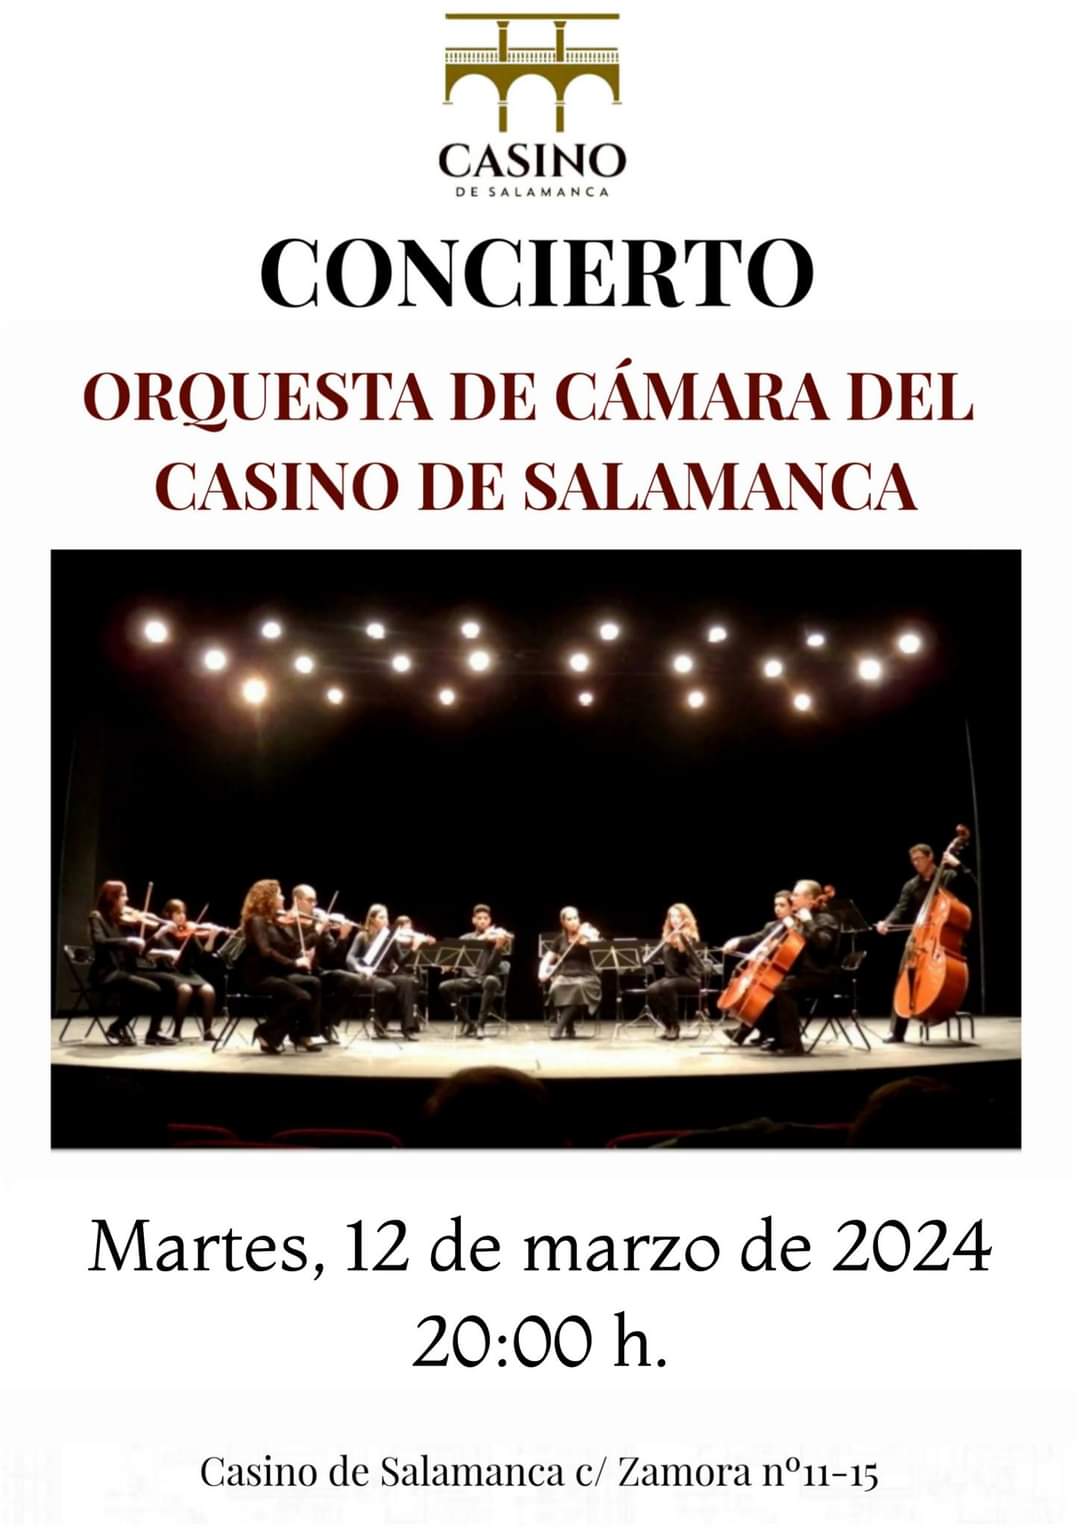 MUSICA - Orquesta de cámara del casino